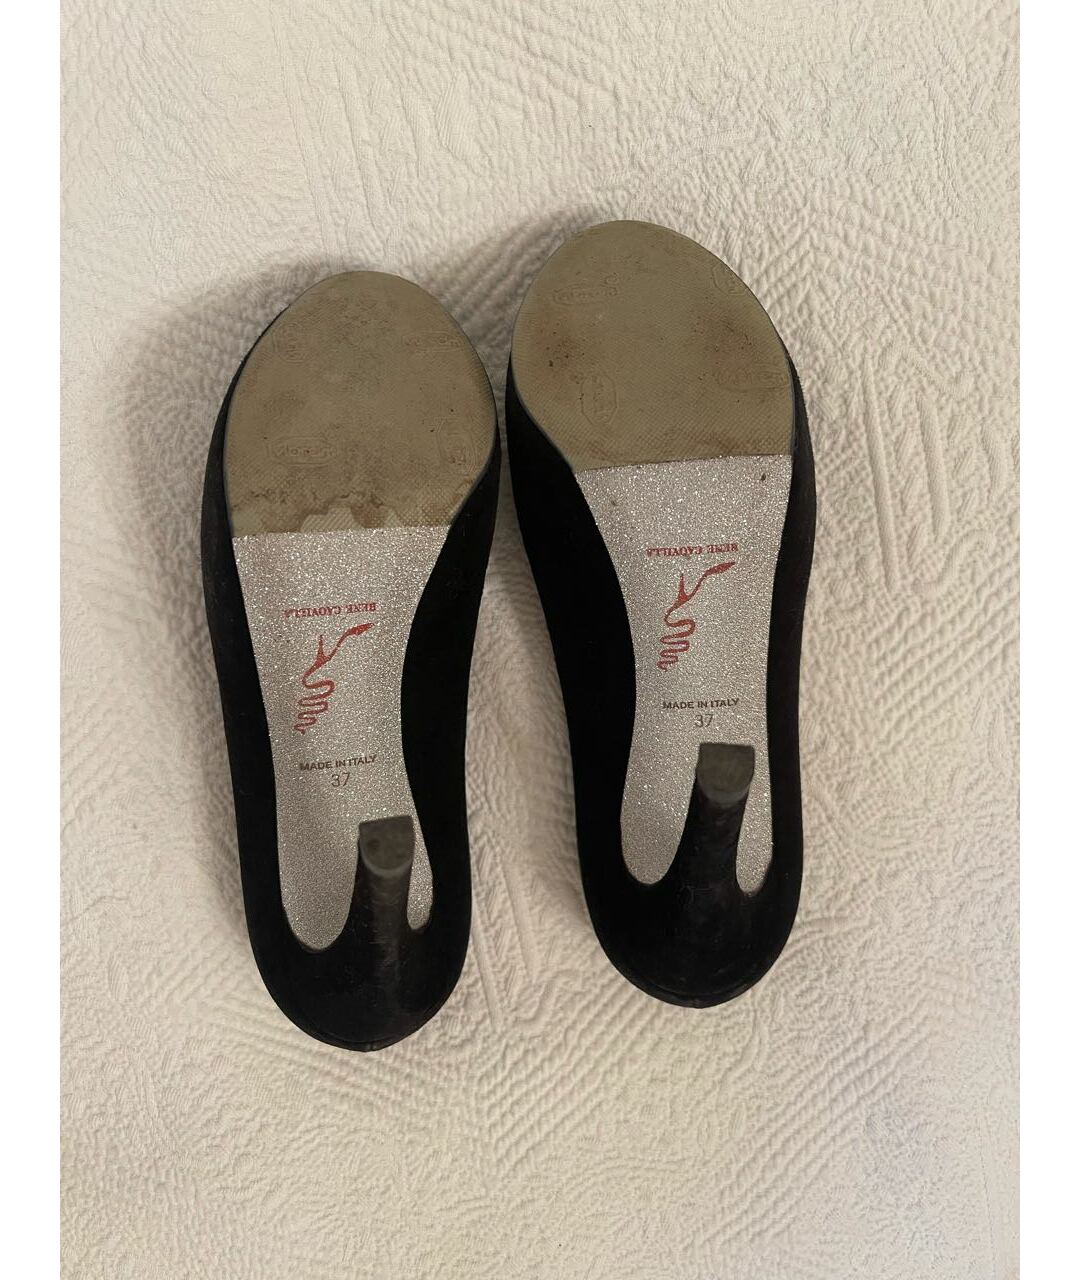 RENE CAOVILLA Черные замшевые туфли, фото 2